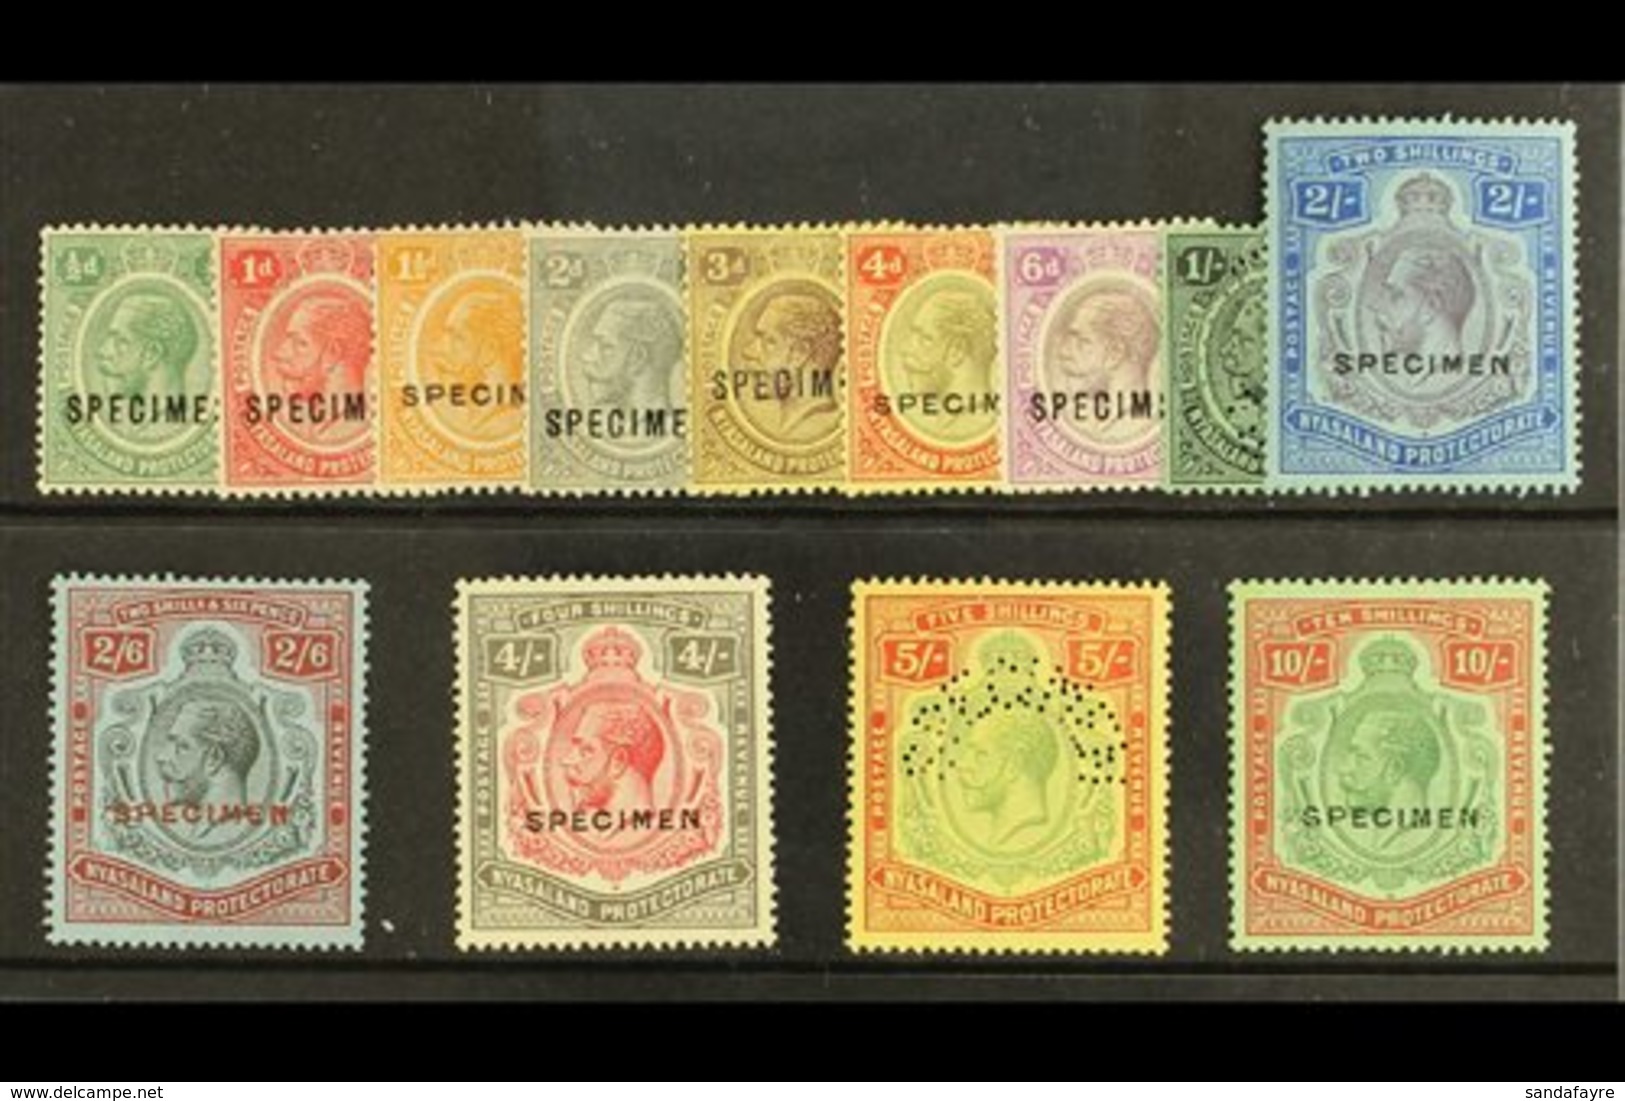 \Y 1921\Y Geo V Complete Set To 10s, Wmk Script CA, Overprinted "Specimen", SG 100/13, Very Fine Mint. (13 Stamps) For M - Nyassaland (1907-1953)